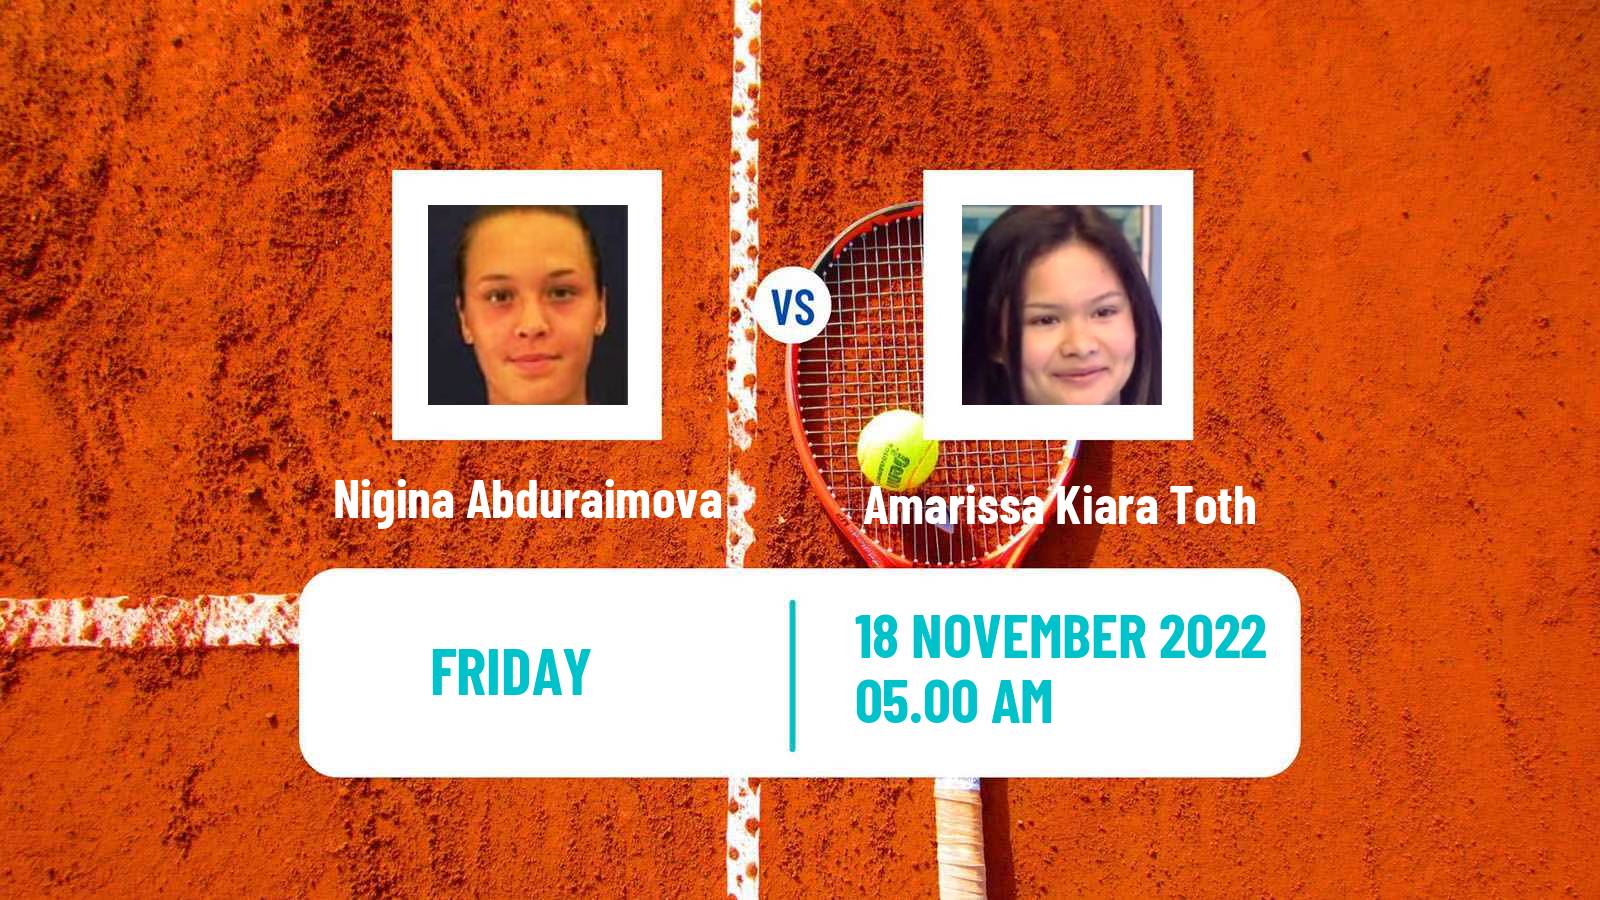 Tennis ITF Tournaments Nigina Abduraimova - Amarissa Kiara Toth